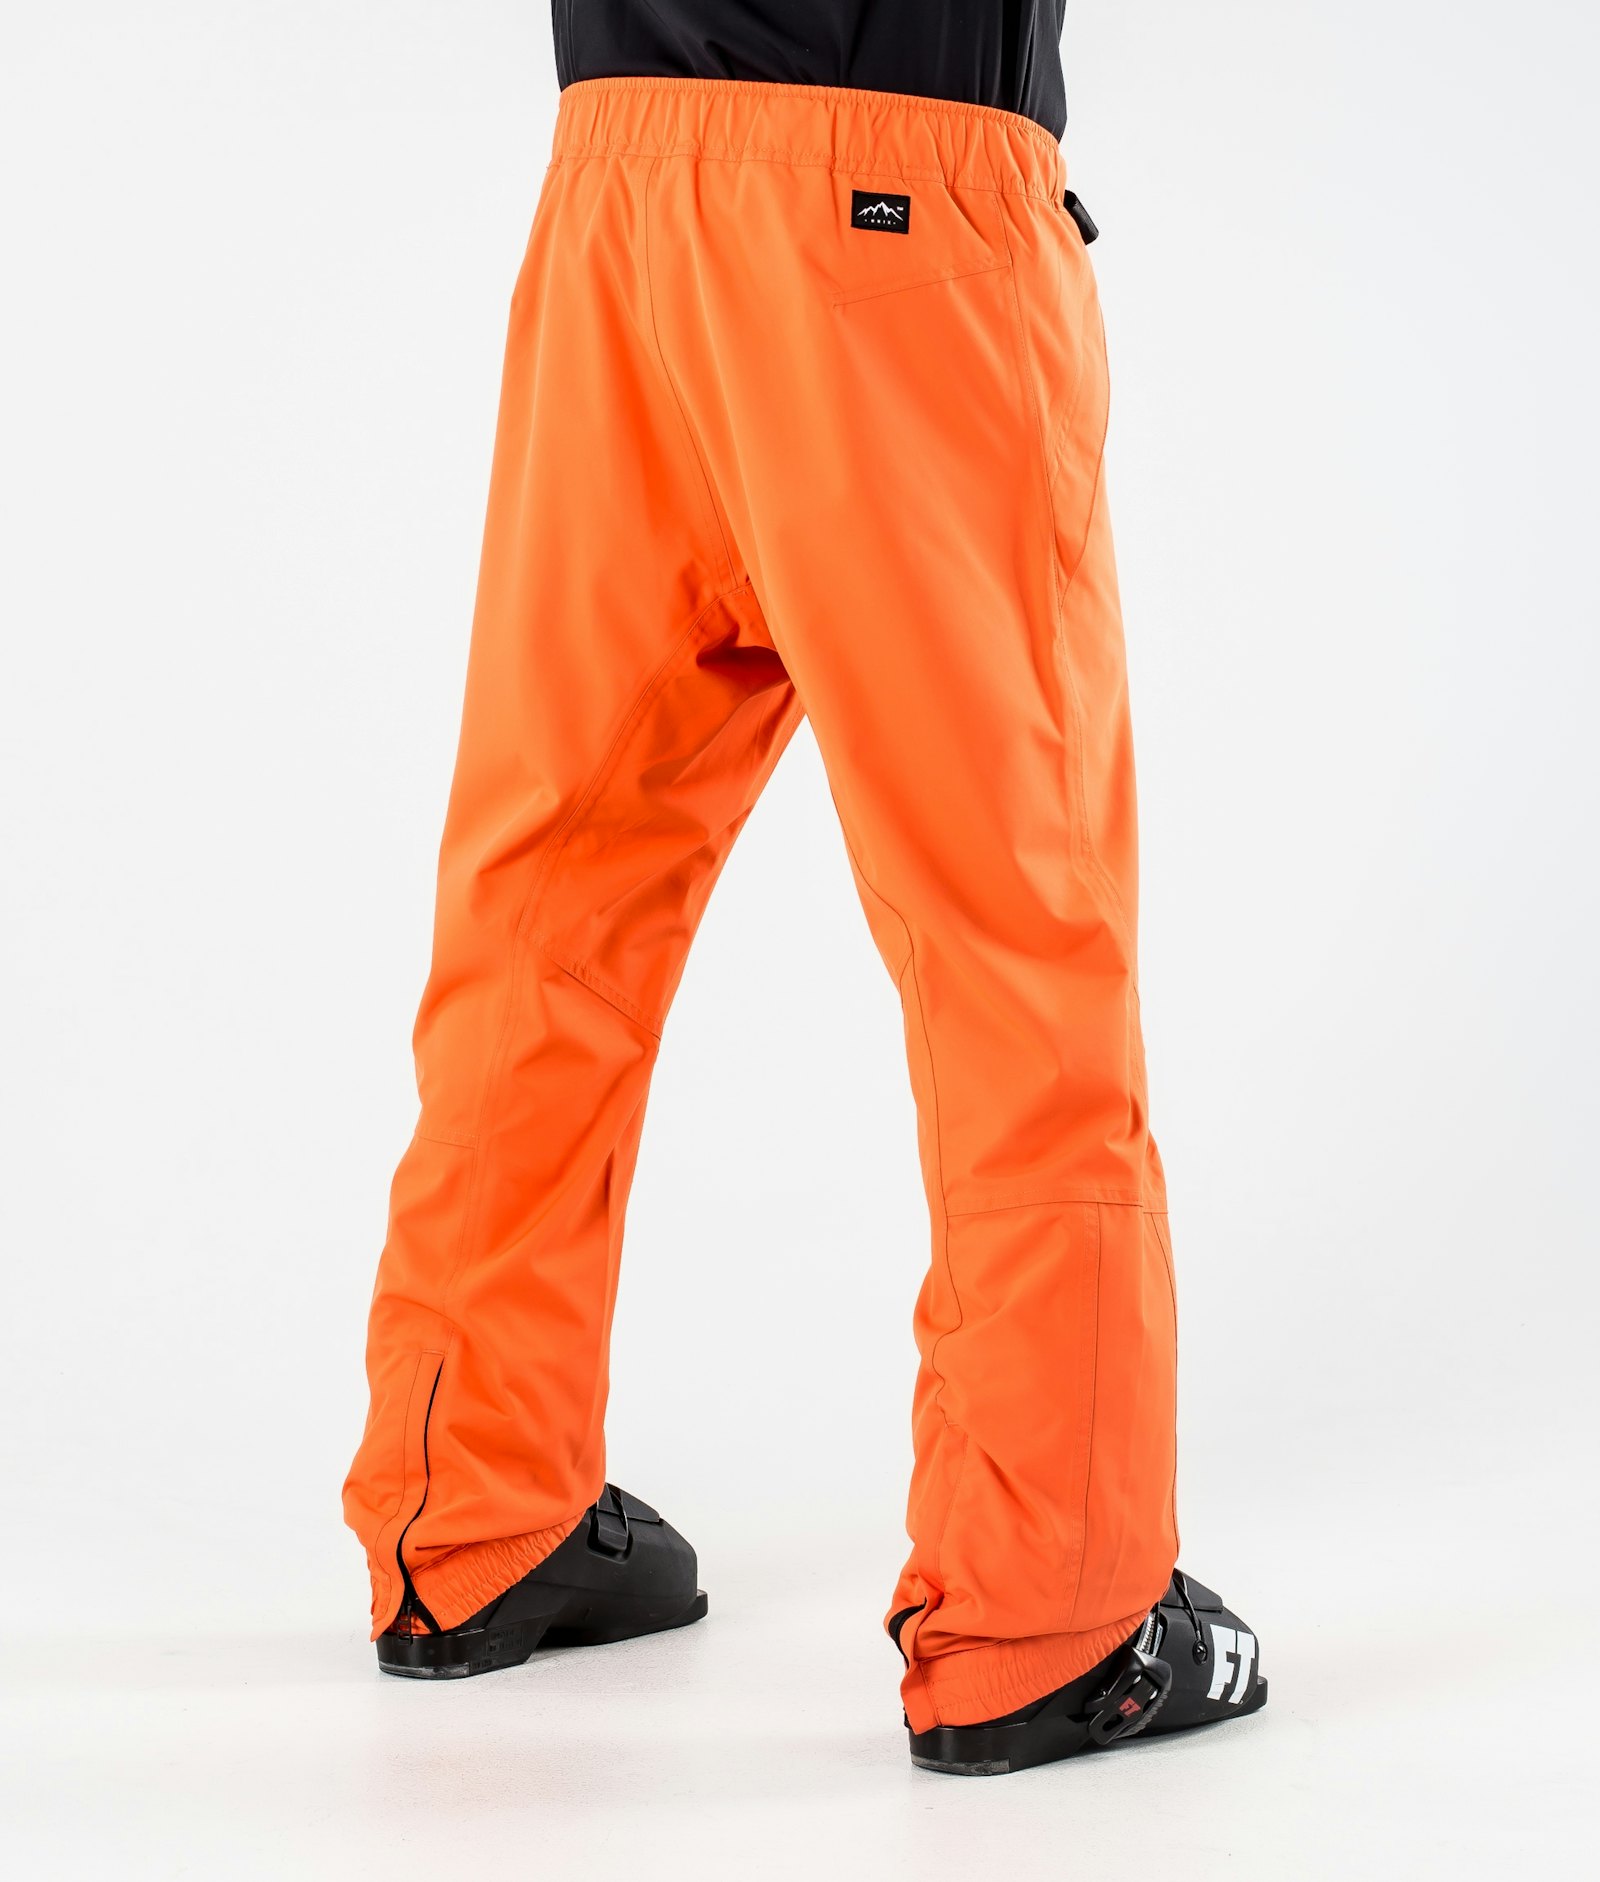 Blizzard 2020 Ski Pants Men Orange